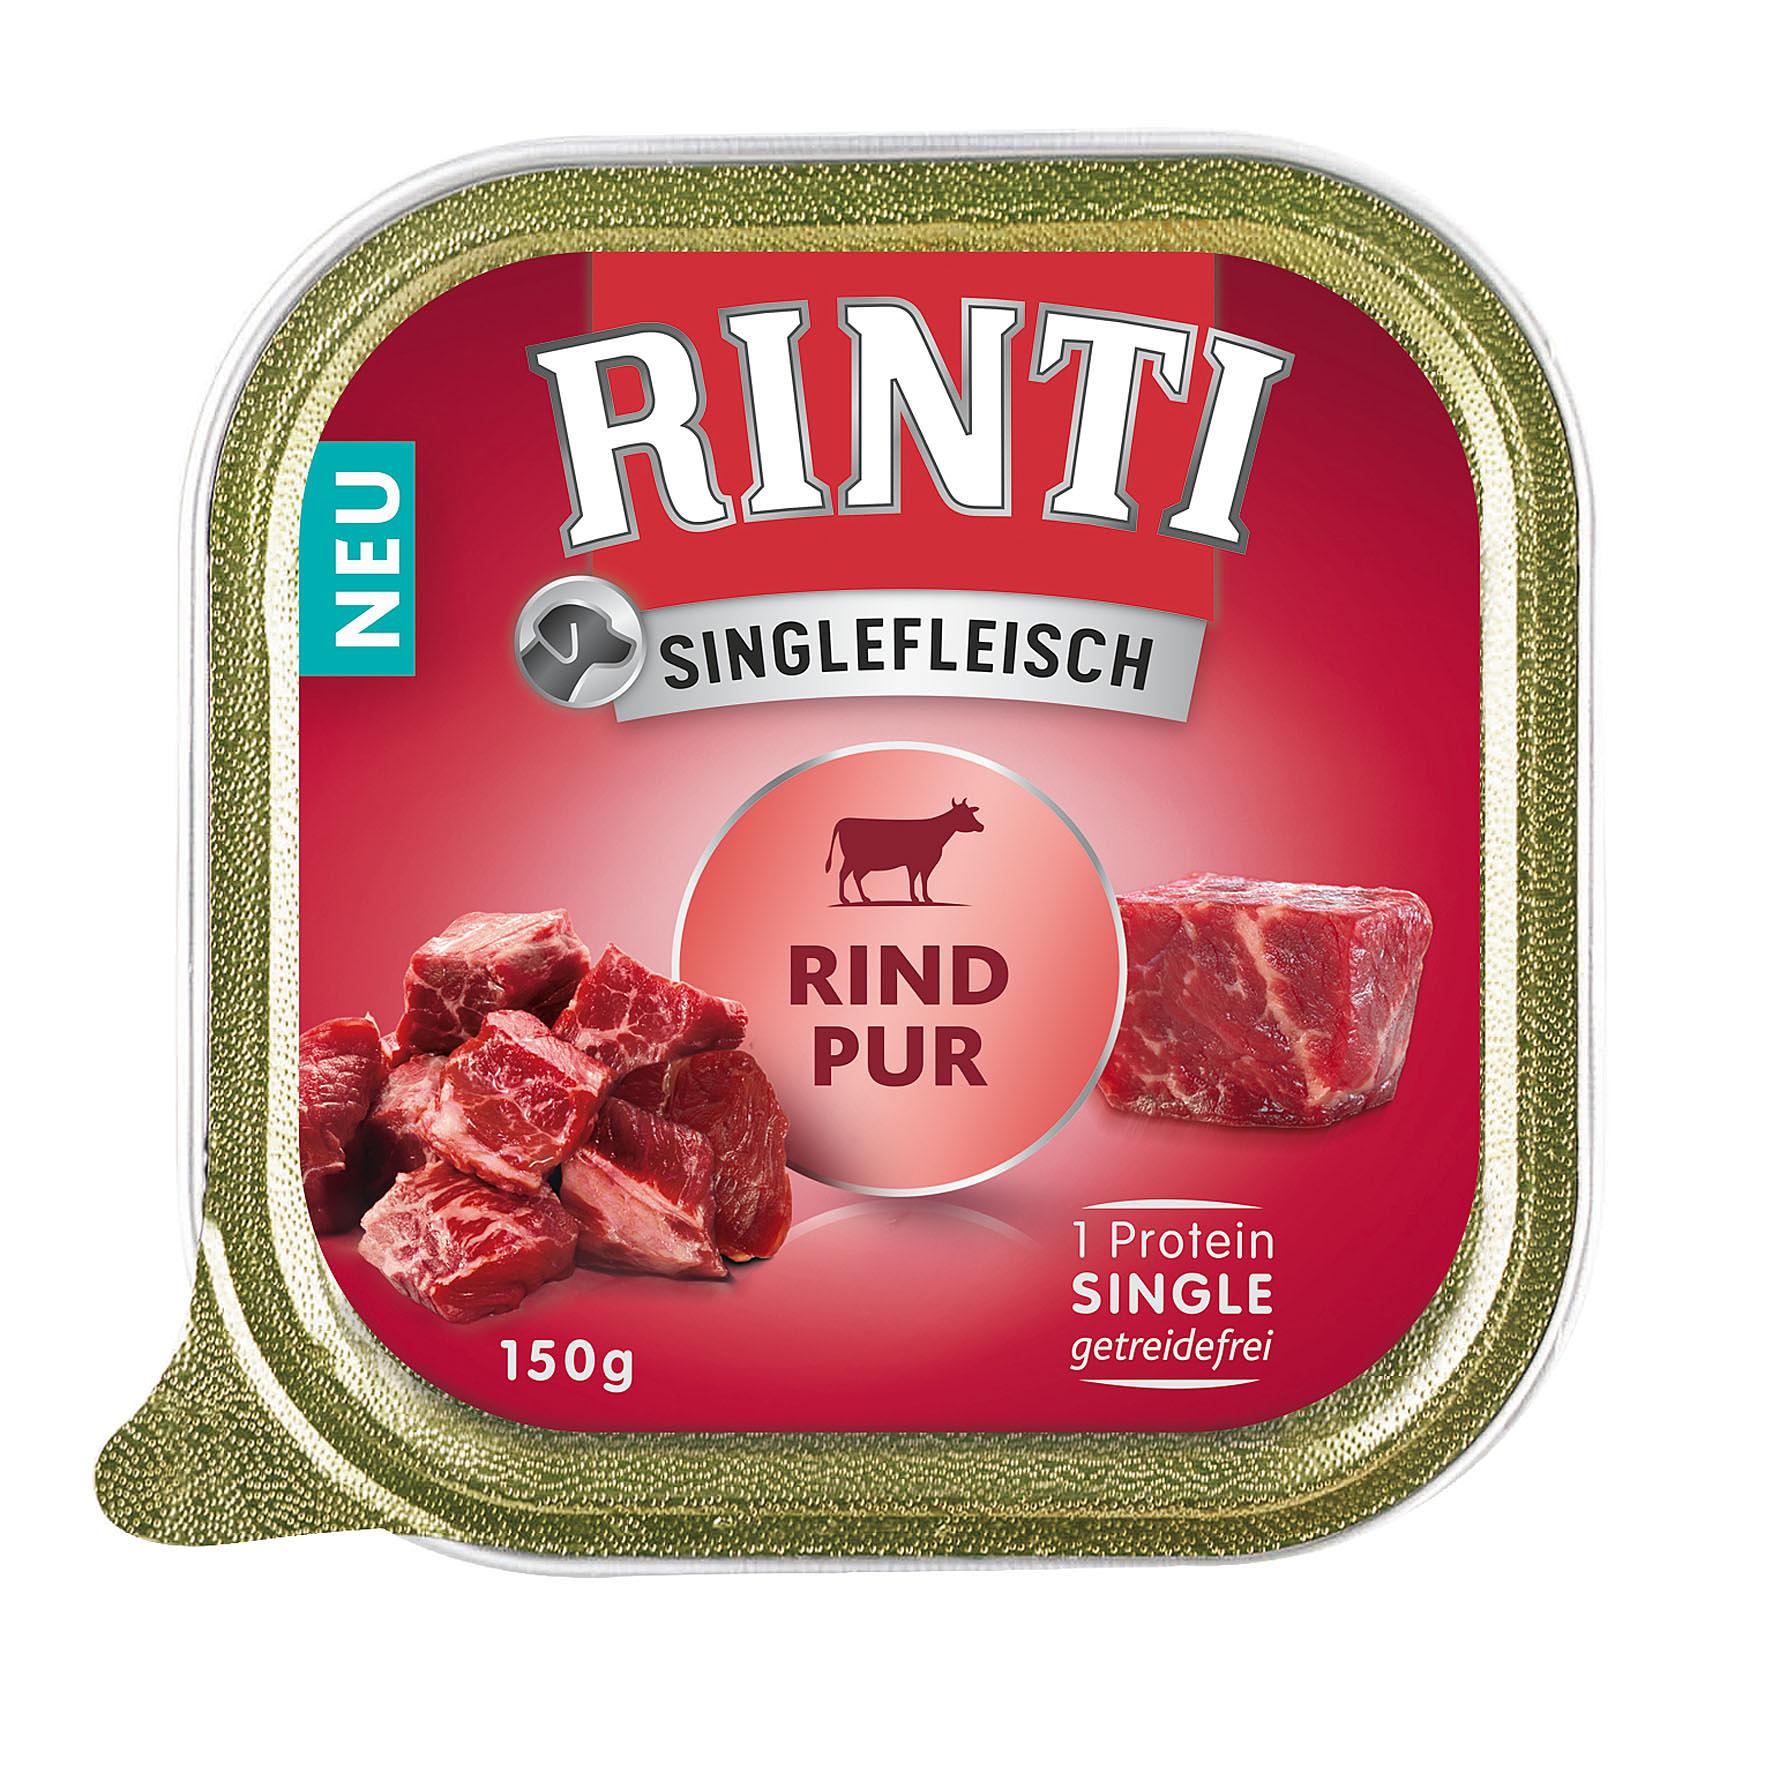 Rinti Singlefleisch PUR